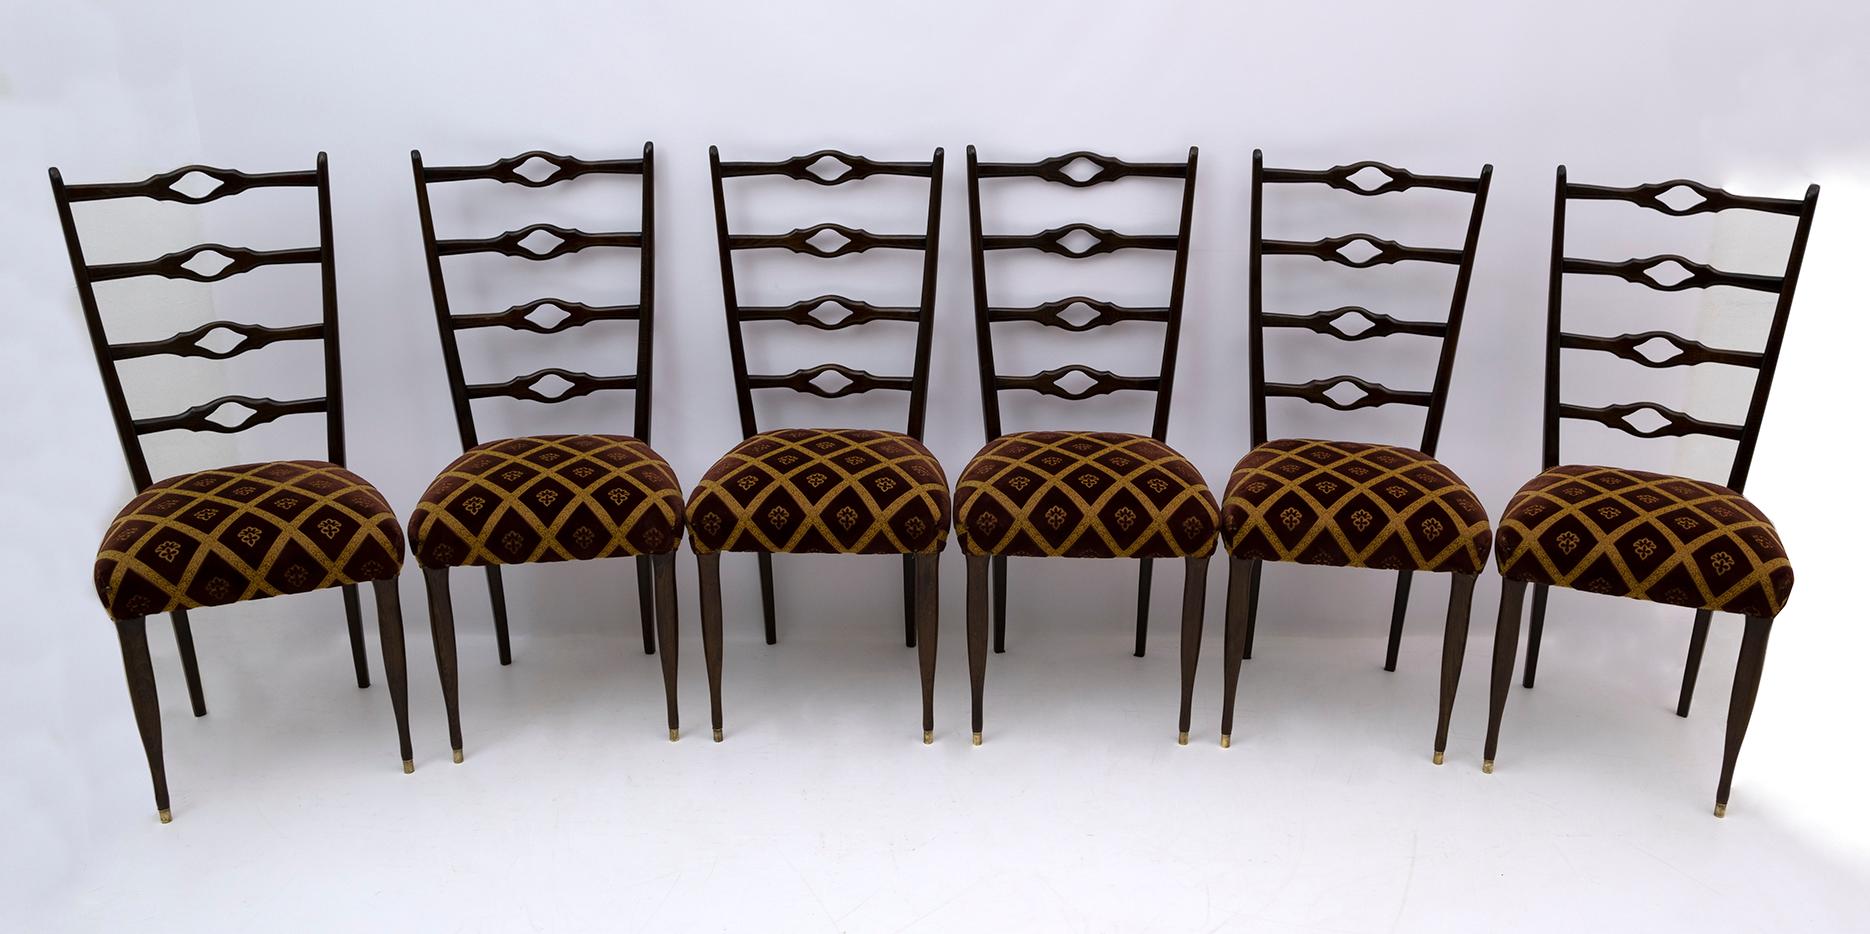 Sechs Esszimmerstühle, entworfen von dem berühmten italienischen Architekten Guglielmo Ulrich, die Stühle sind aus Nussbaum und die Polsterung ist aus strukturiertem Samt, die Polsterung ist original und in gutem Zustand, die Stühle wurden mit